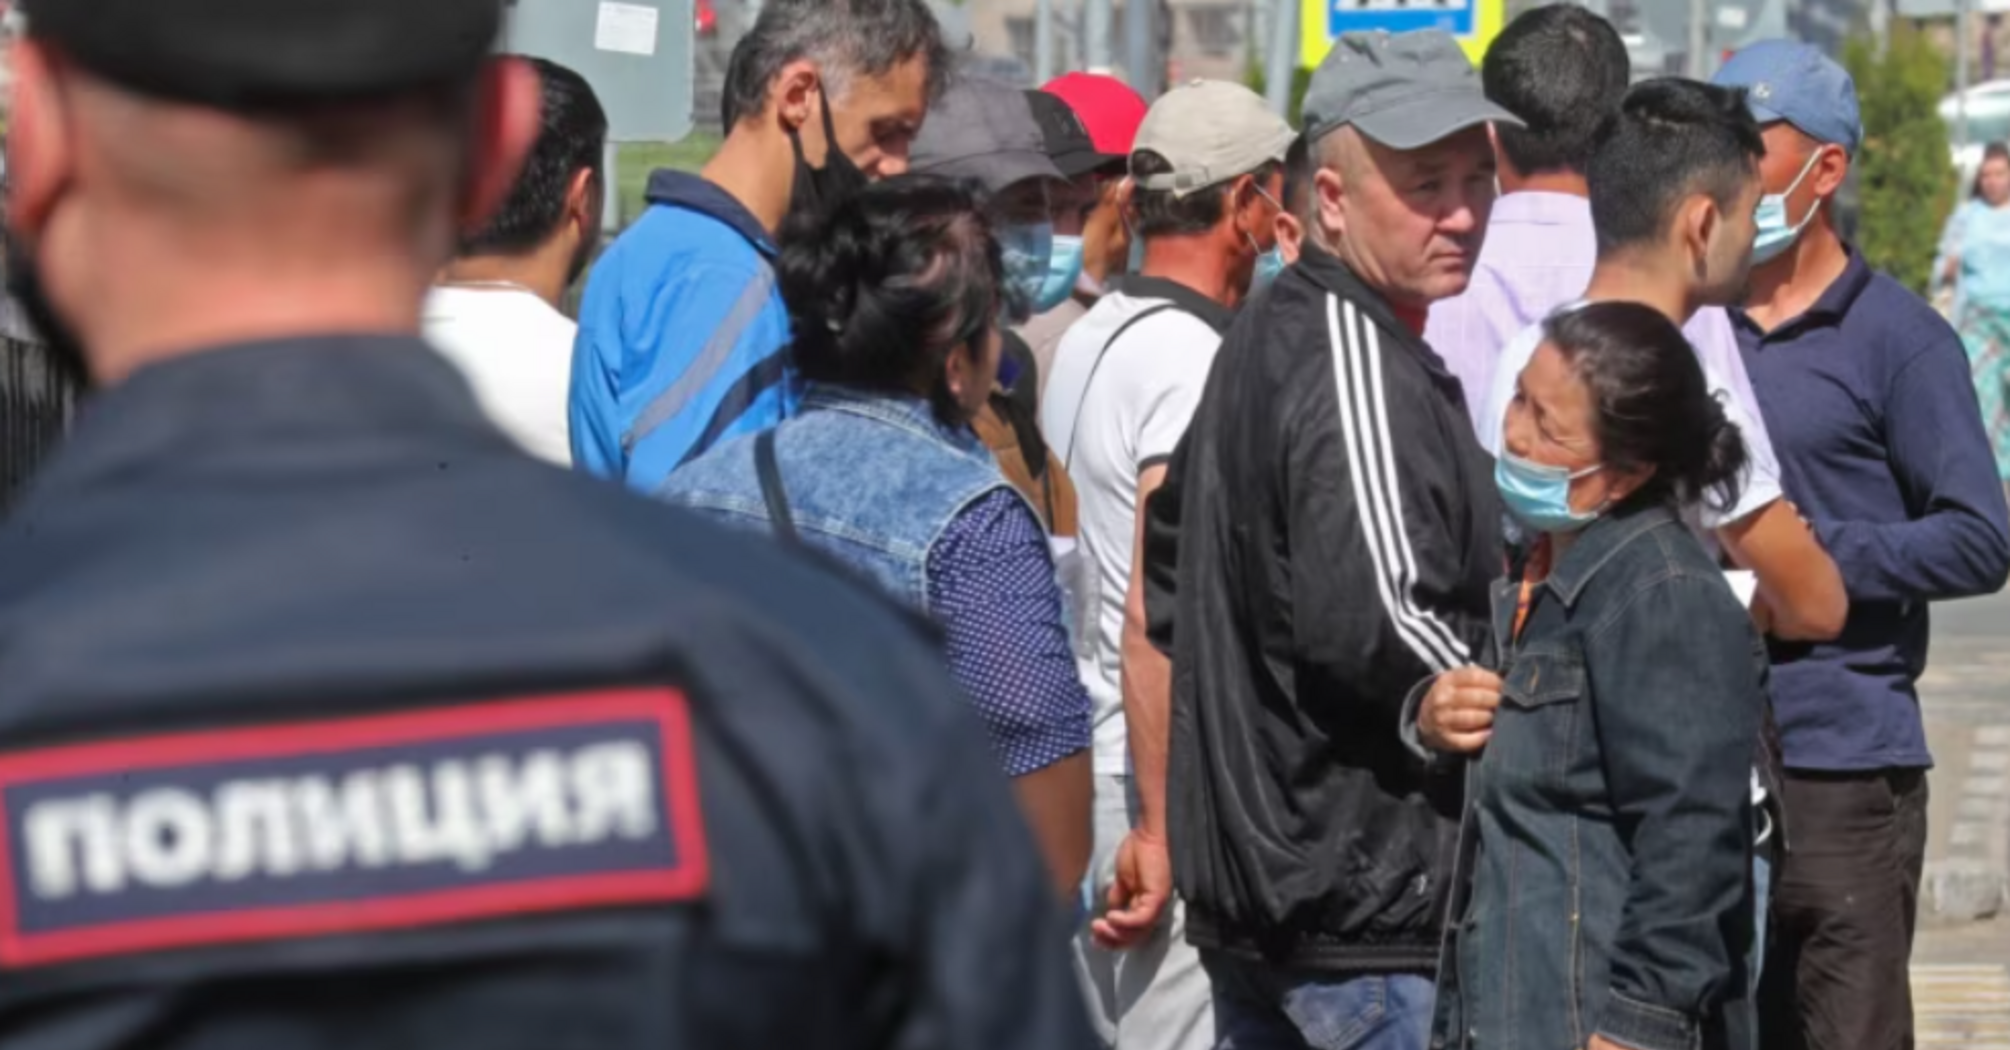 Антииммигрантские настроения в России вскрыли глубинные проблемы общества